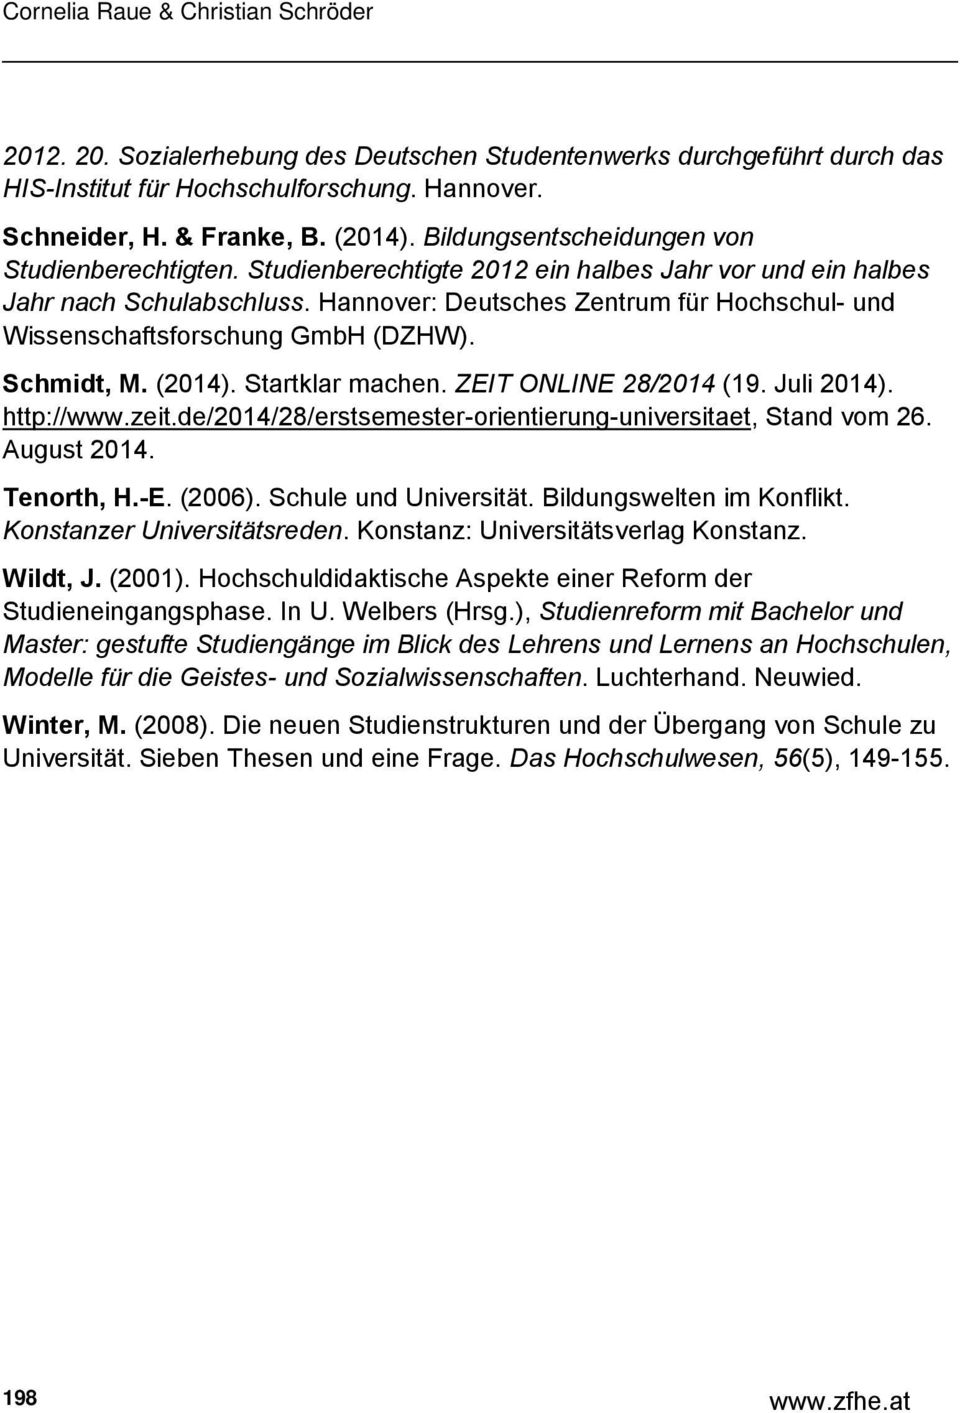 Hannover: Deutsches Zentrum für Hochschul- und Wissenschaftsforschung GmbH (DZHW). Schmidt, M. (2014). Startklar machen. ZEIT ONLINE 28/2014 (19. Juli 2014). http://www.zeit.